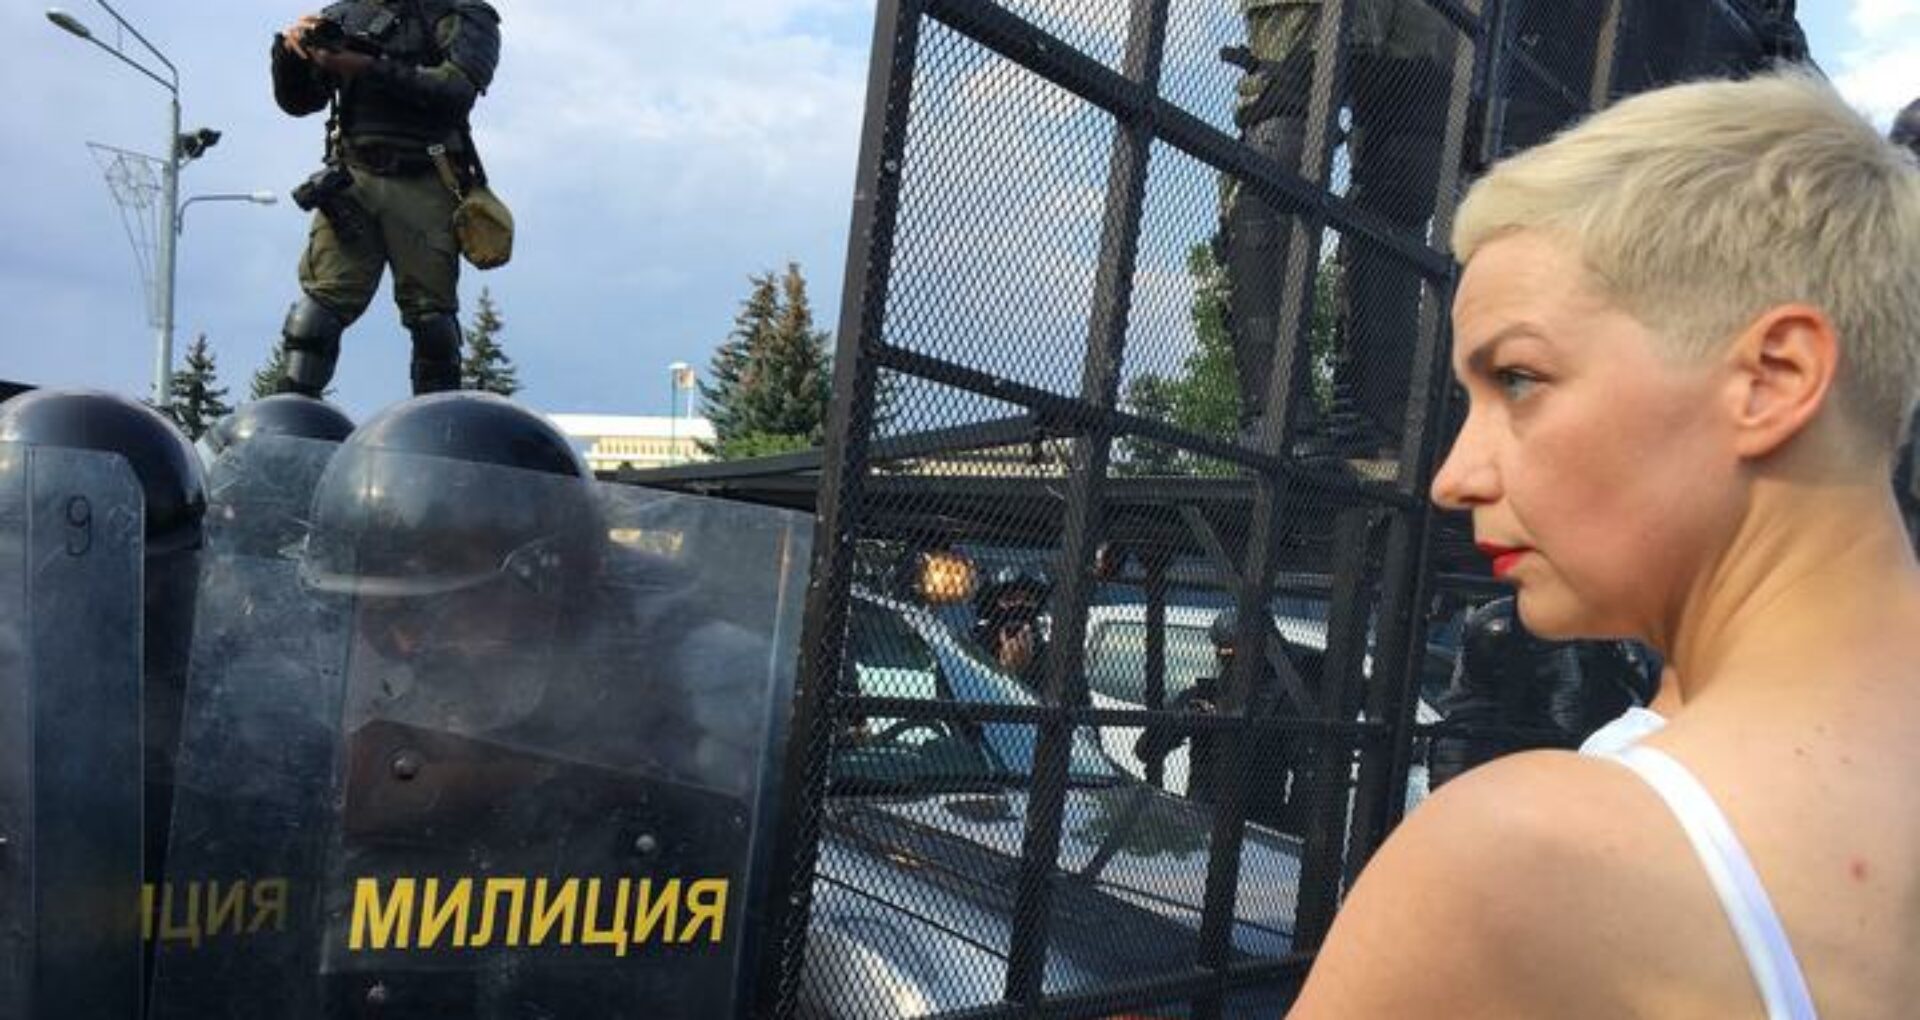 Maria Kolesnikova a fost reținută și se află în izolatorul nr 1 de pe strada Volodarsk din Minsk